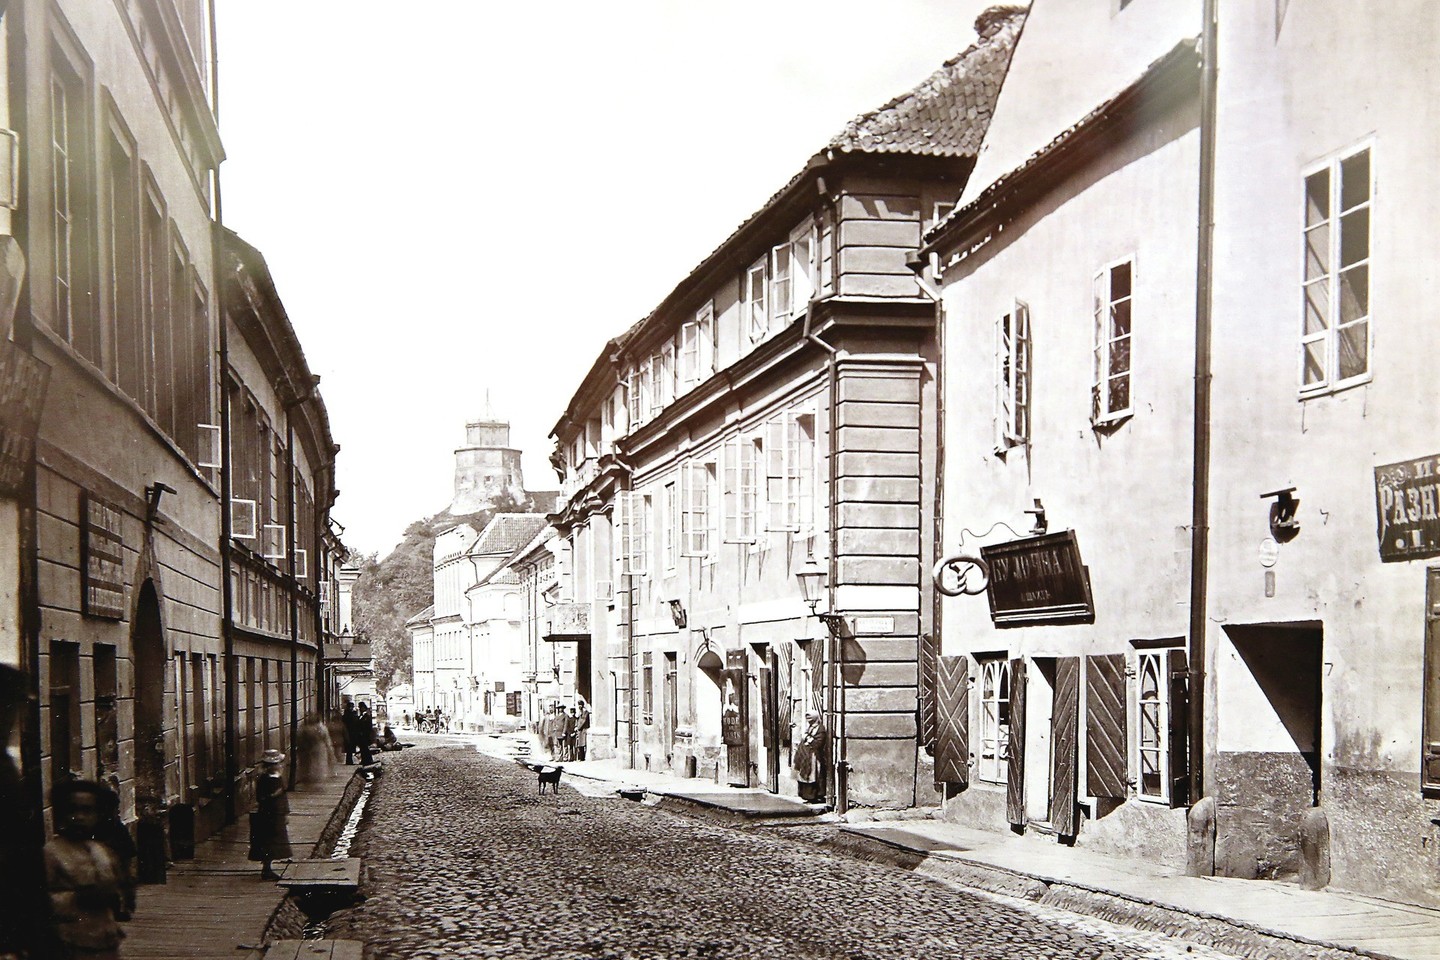 Išliko kelios J.Čechavičiaus nuotraukos, kuriose užfiksuota Pilies gatvė.